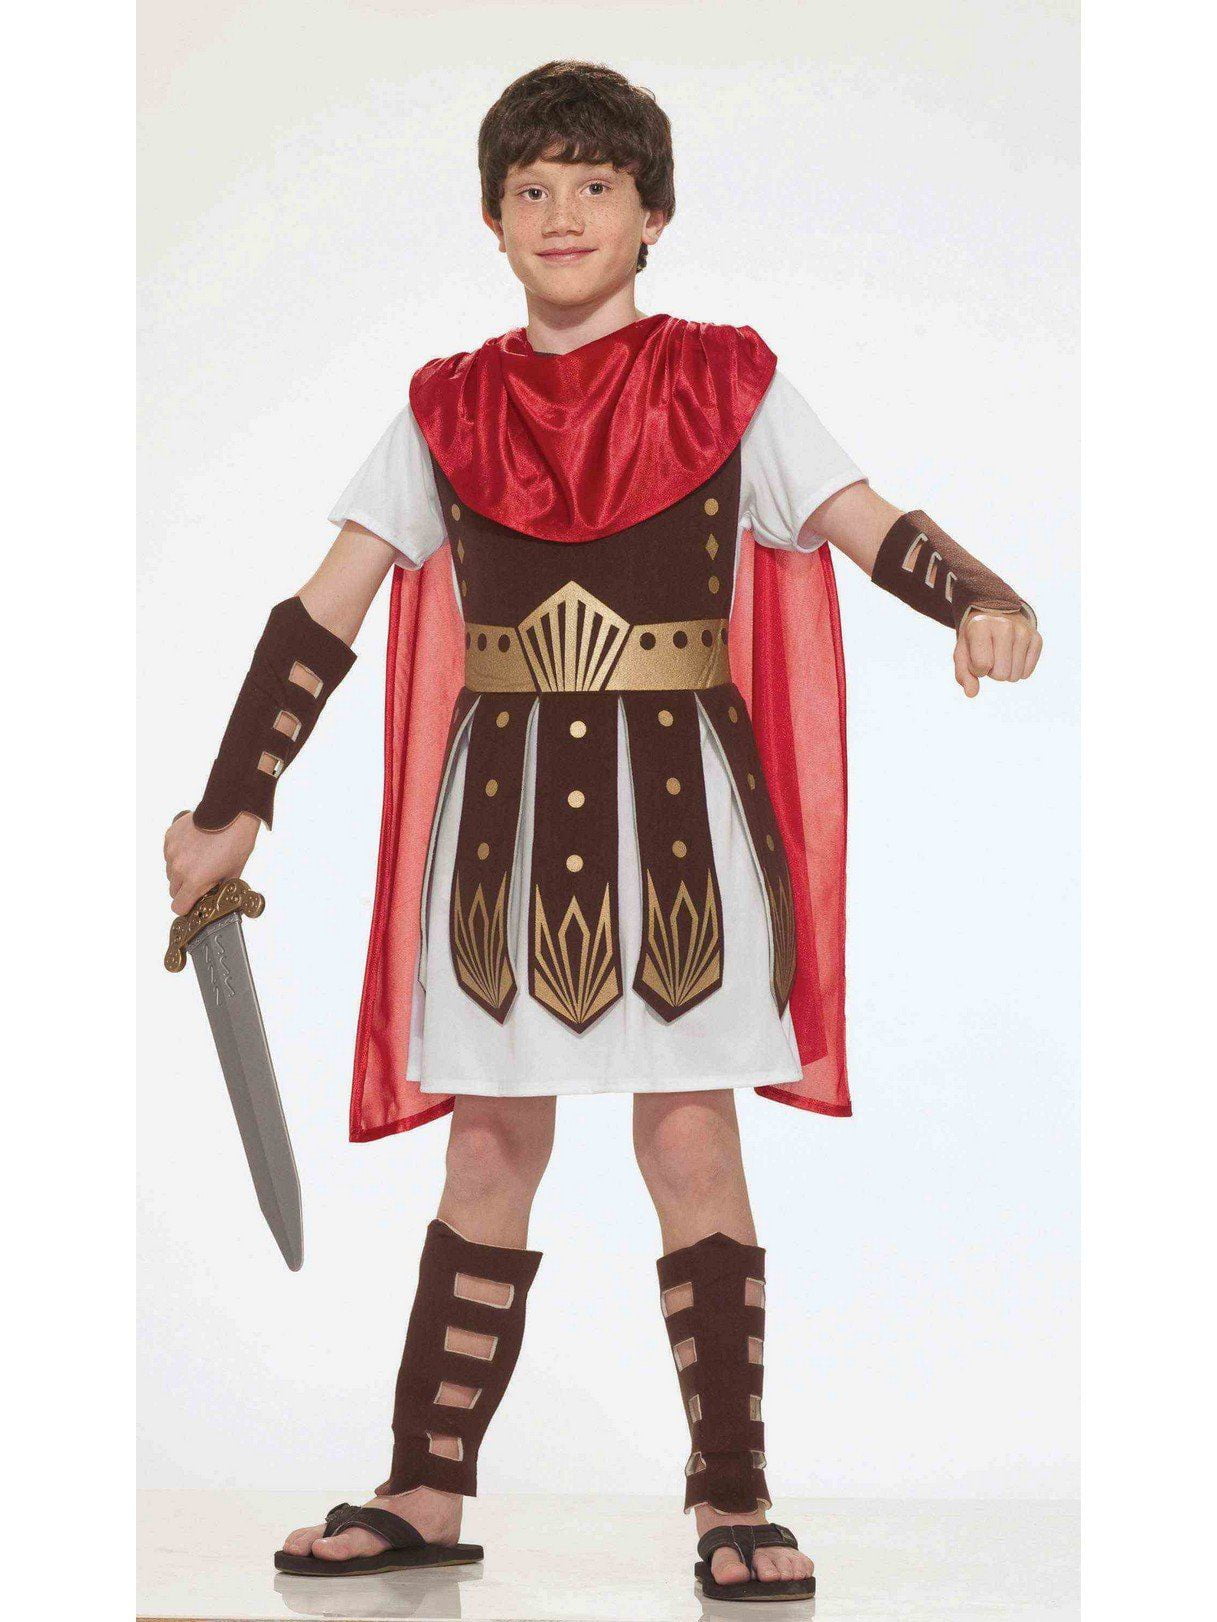 Perioperative period Subordinate Additive Child Roman Warrior Costume - Walmart.com